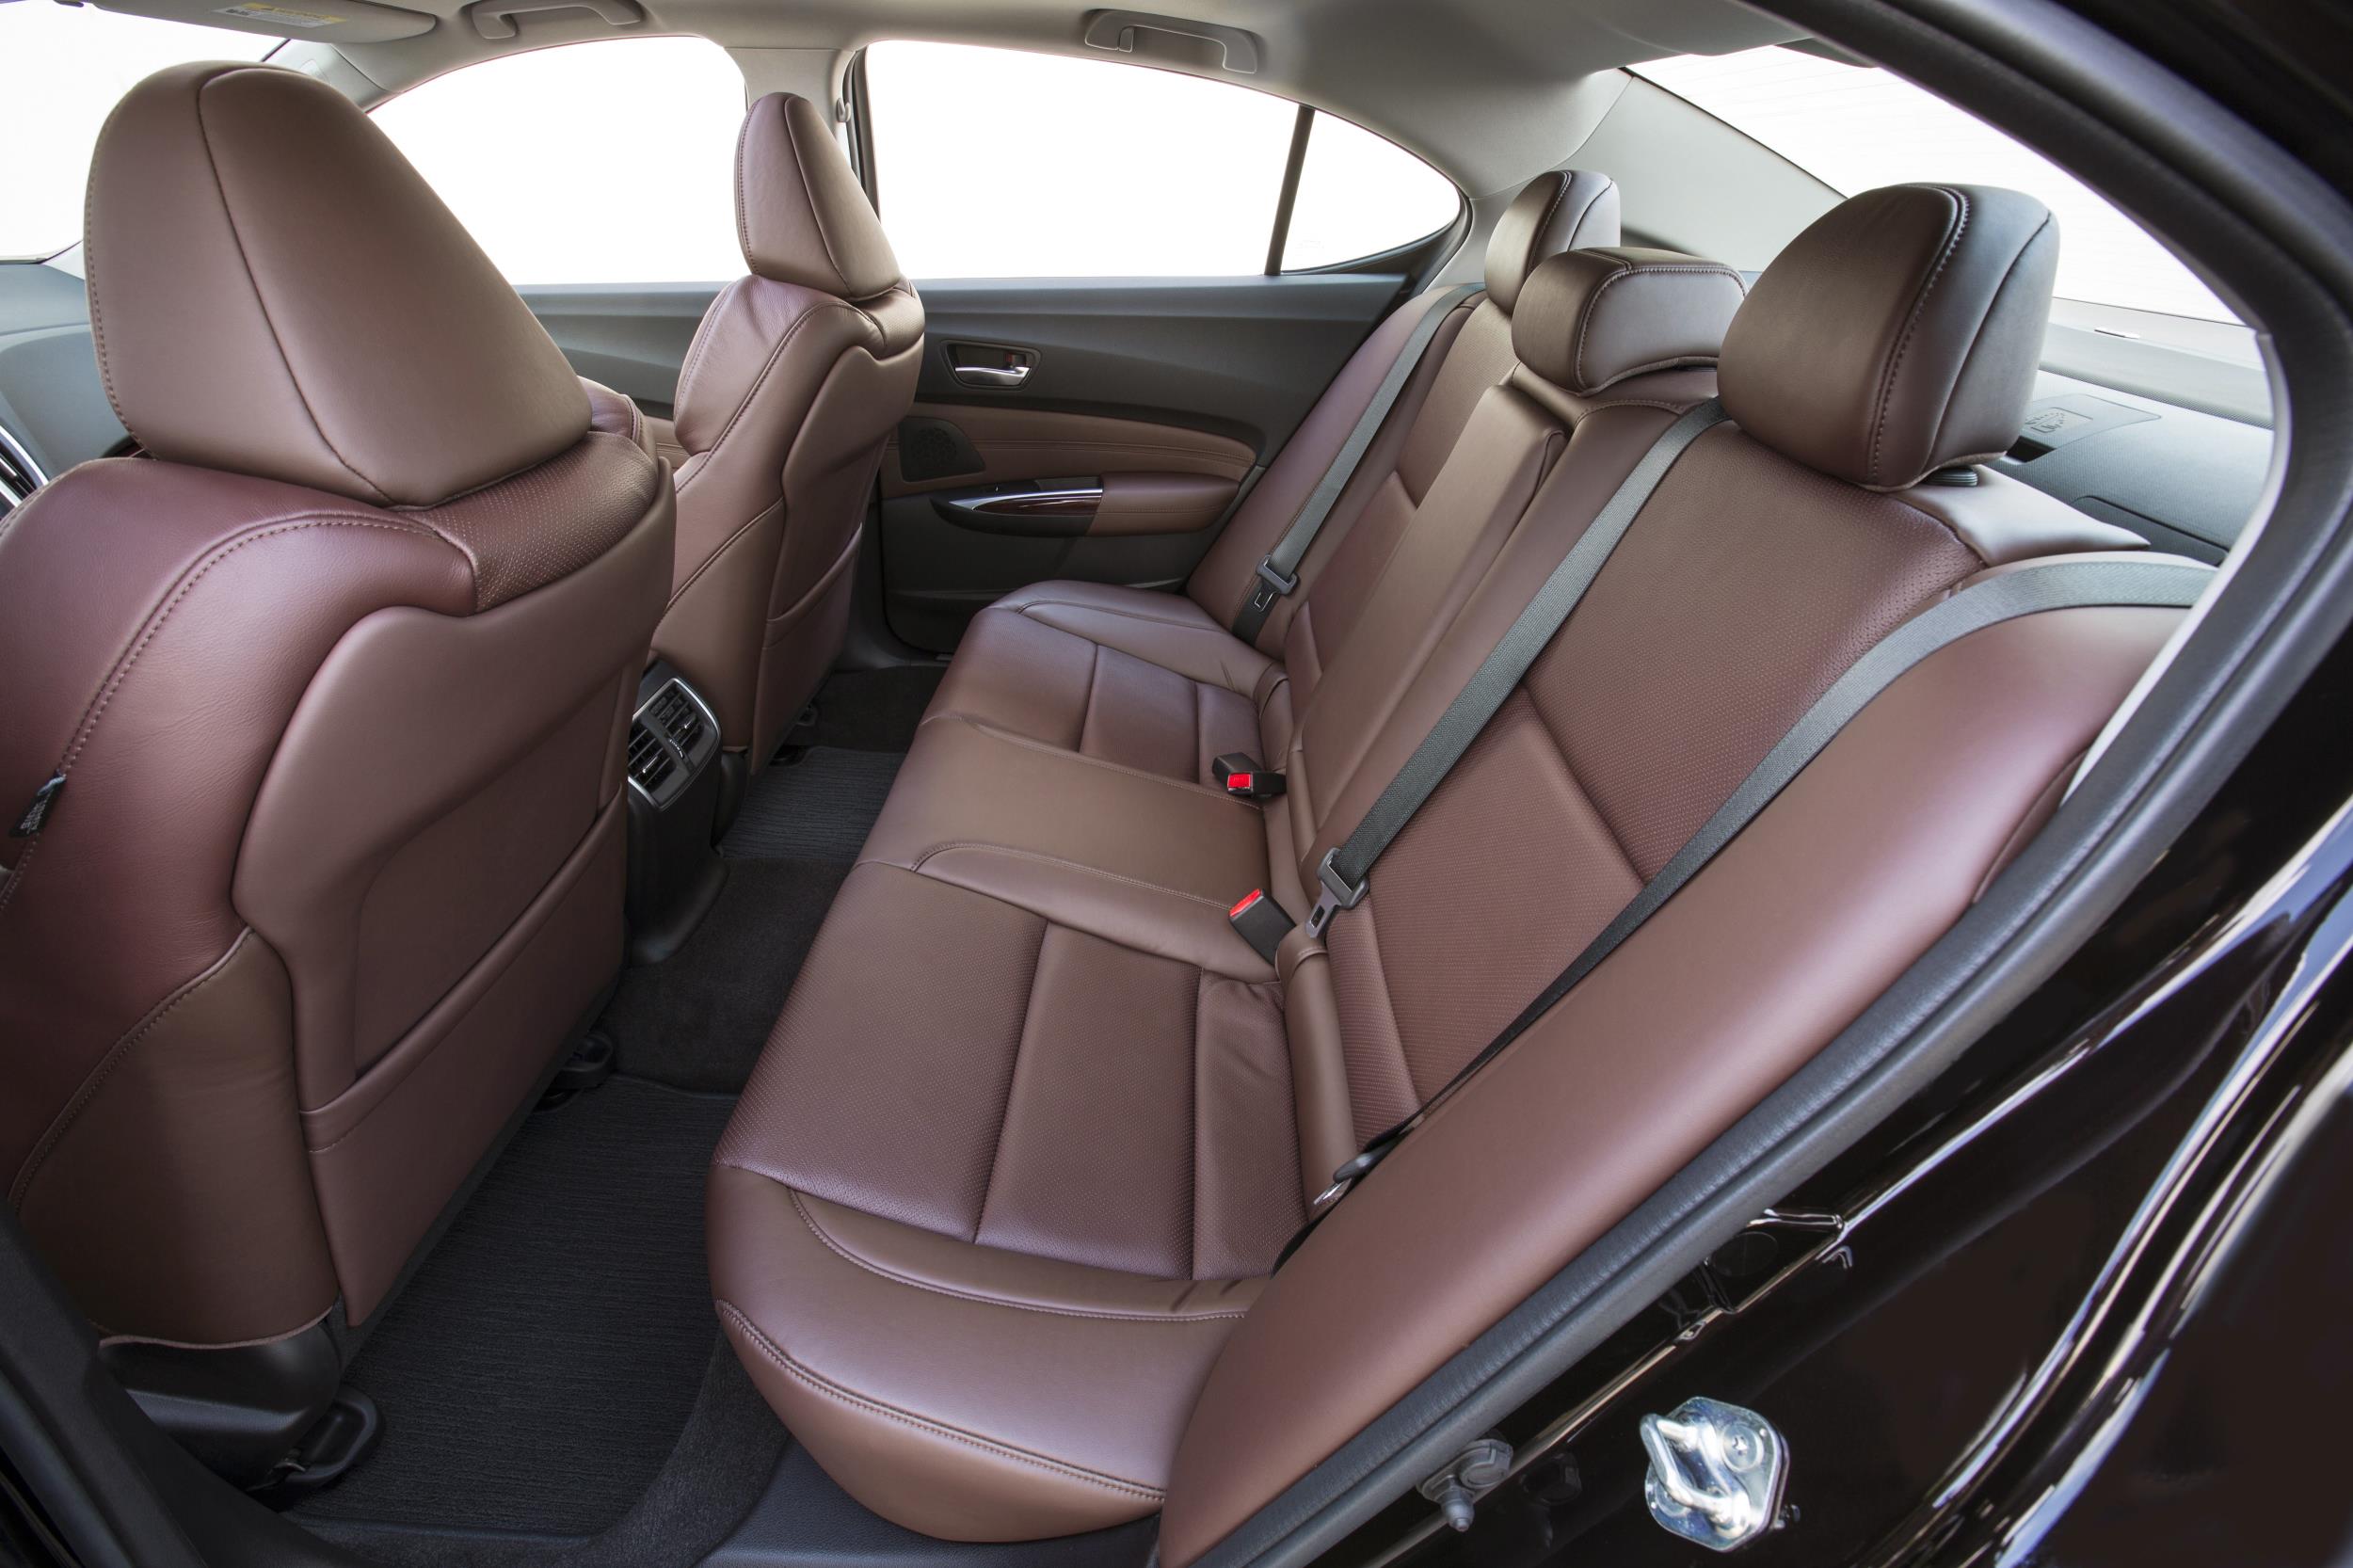 2017 Acura Tlx Luxury Sports Sedan Myautoworld Com